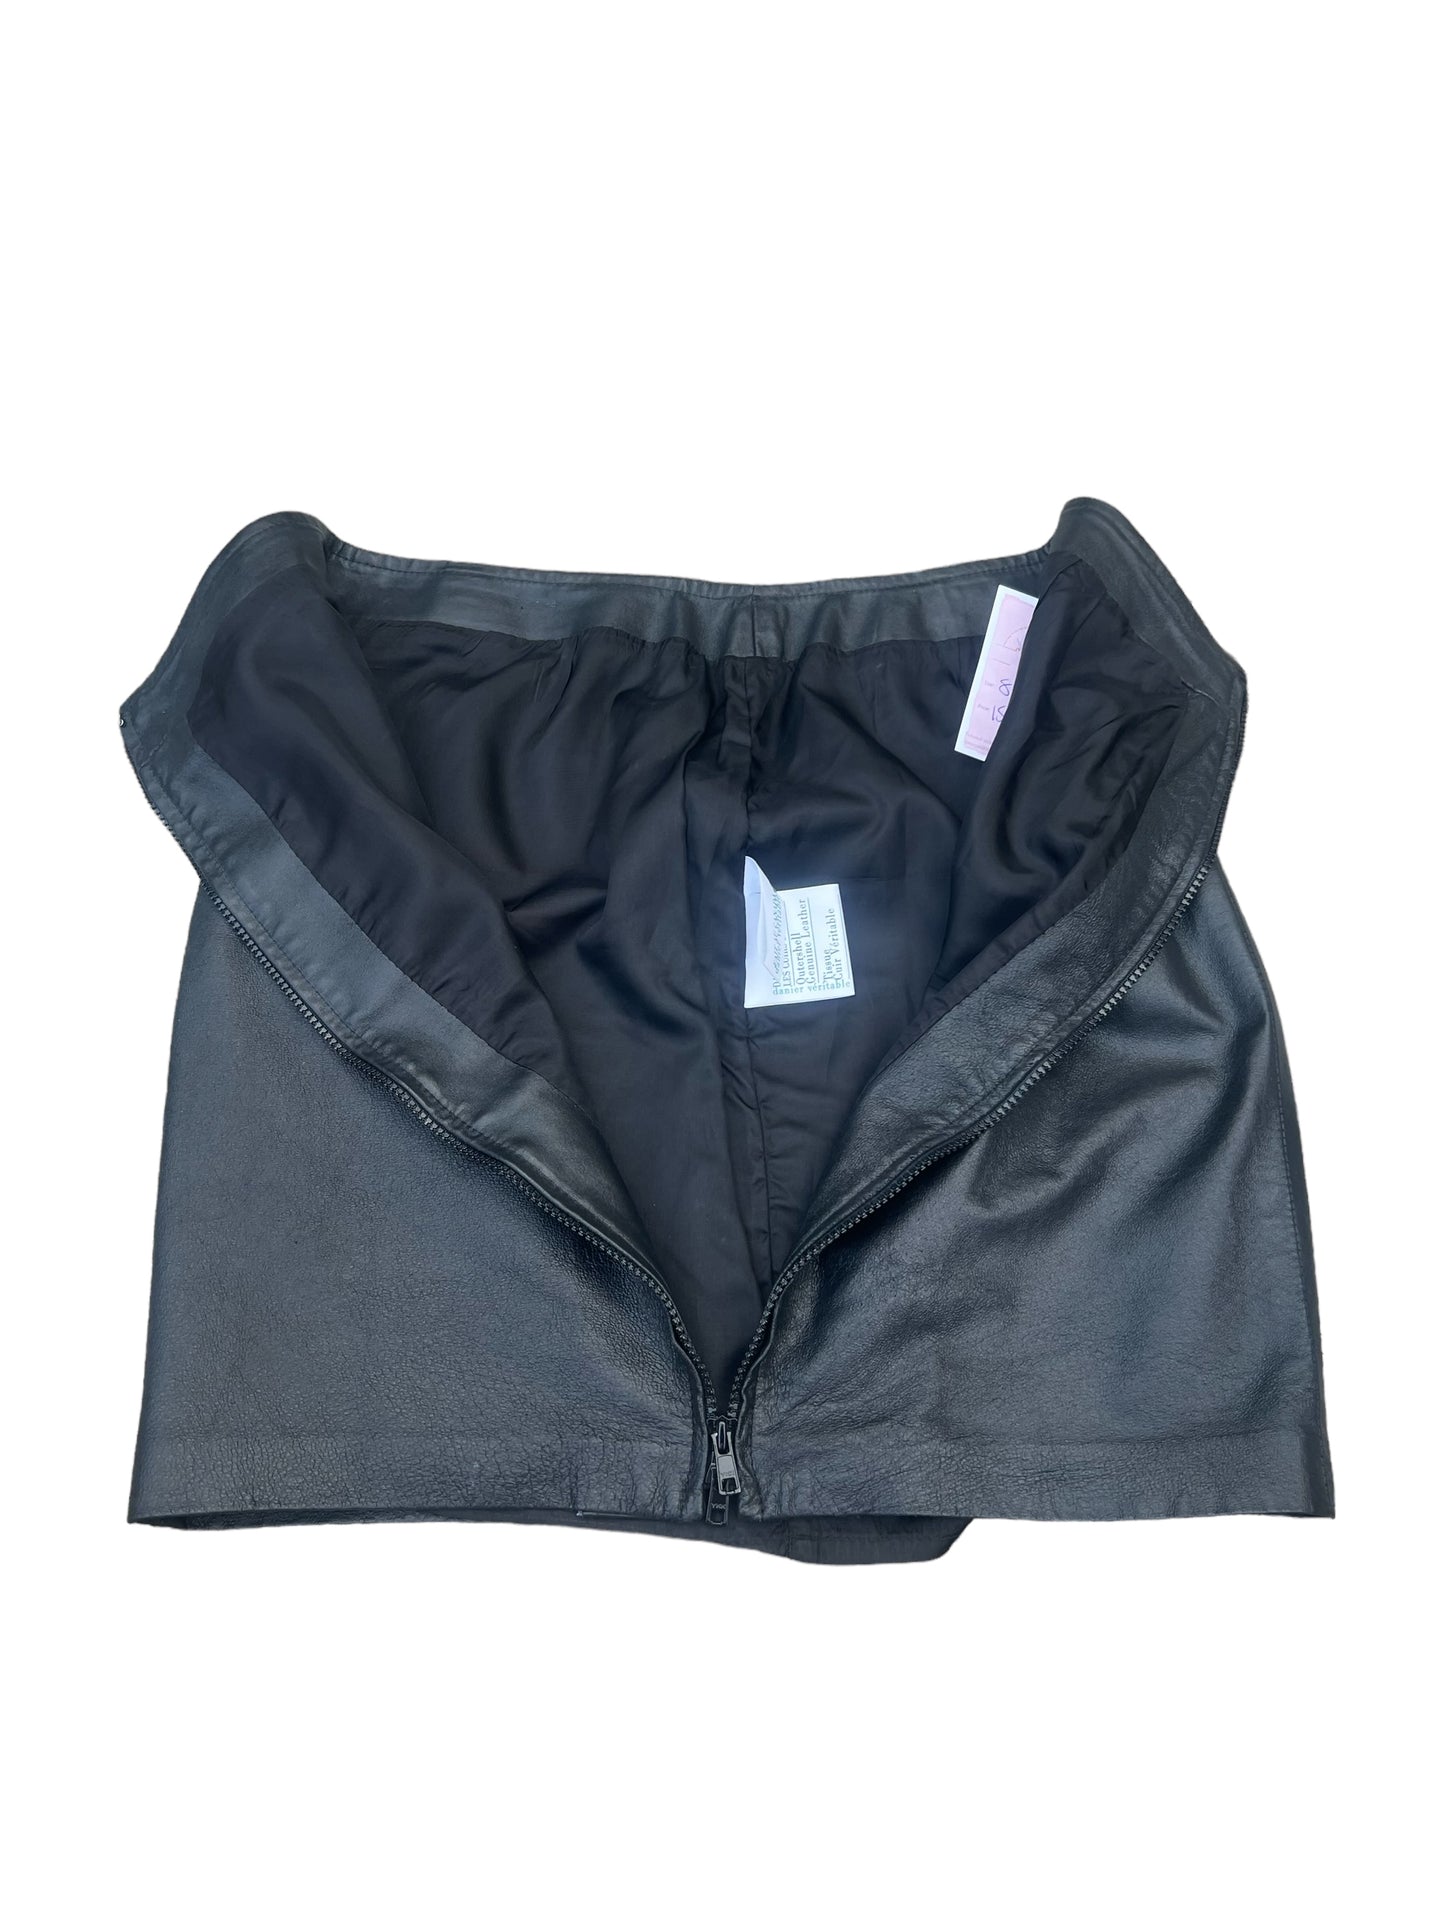 Danier Leather Skirt